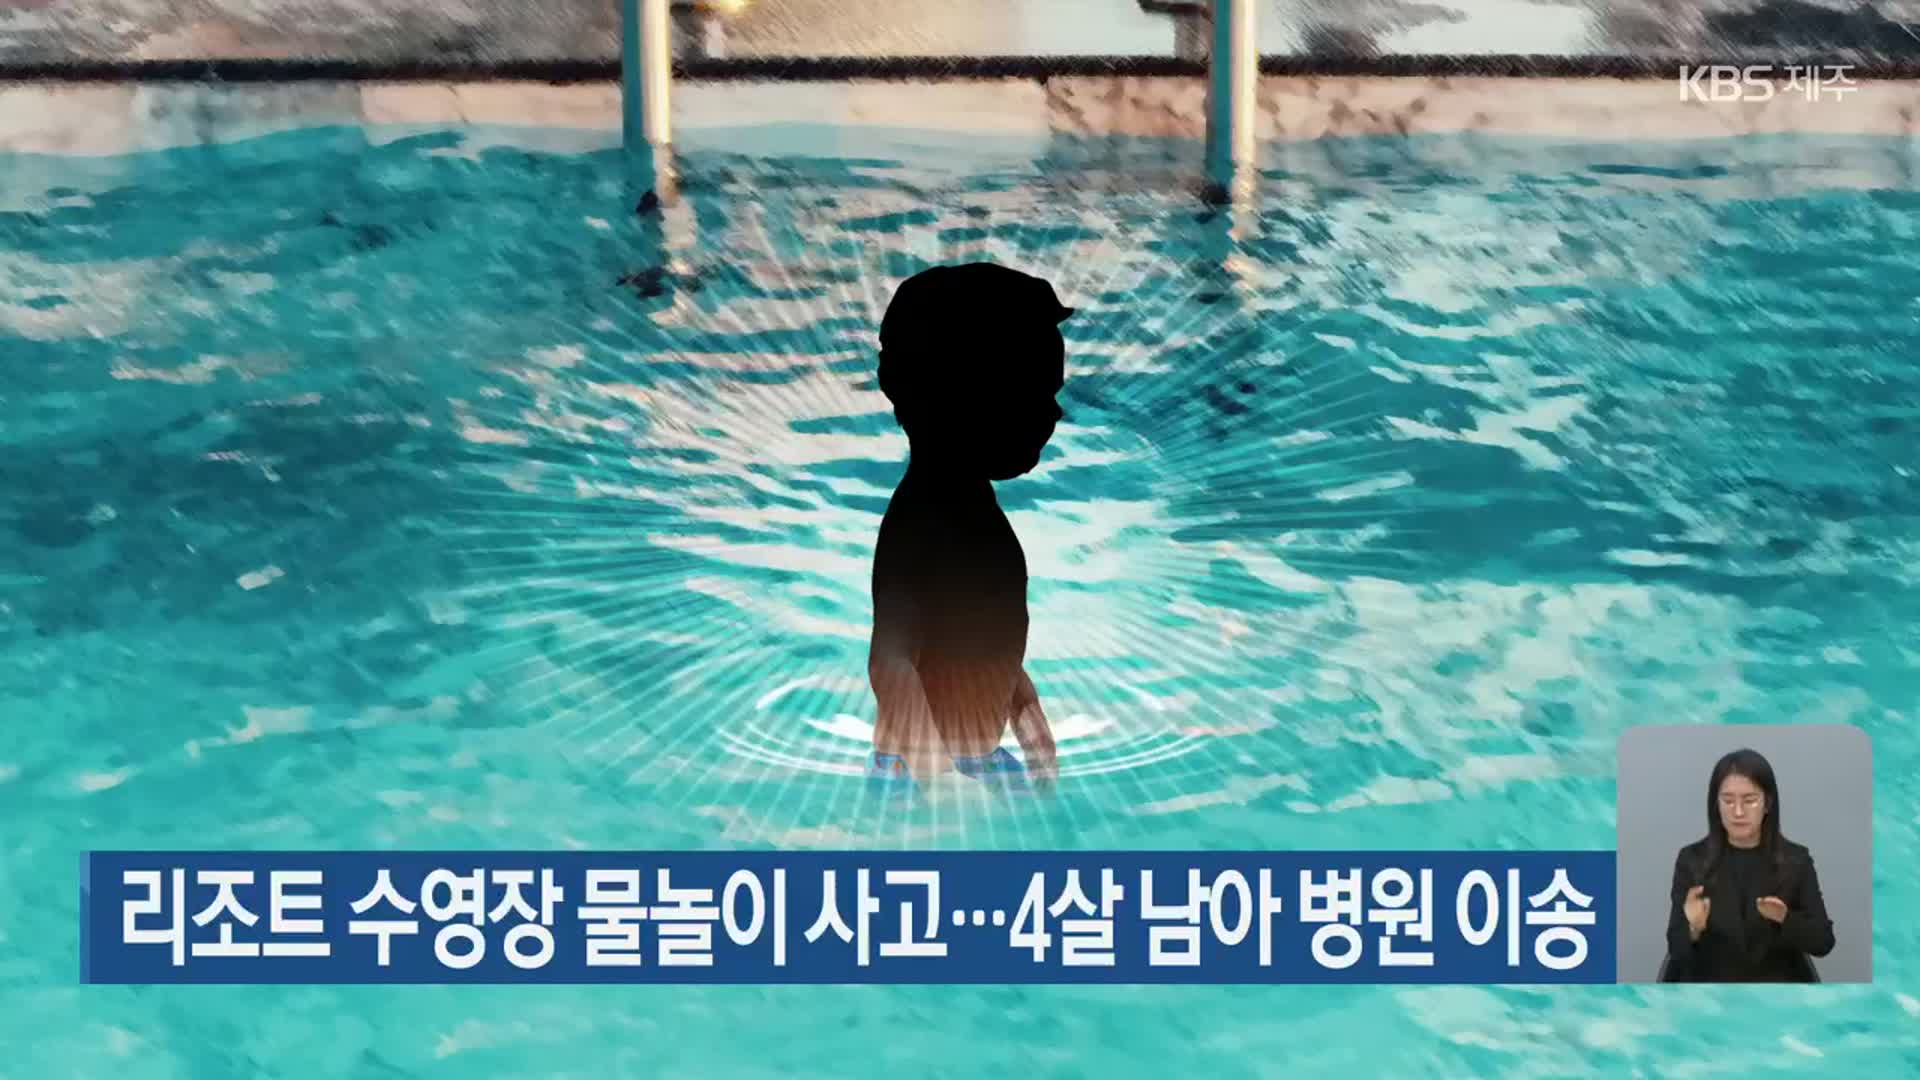 리조트 수영장 물놀이 사고…4살 남아 병원 이송